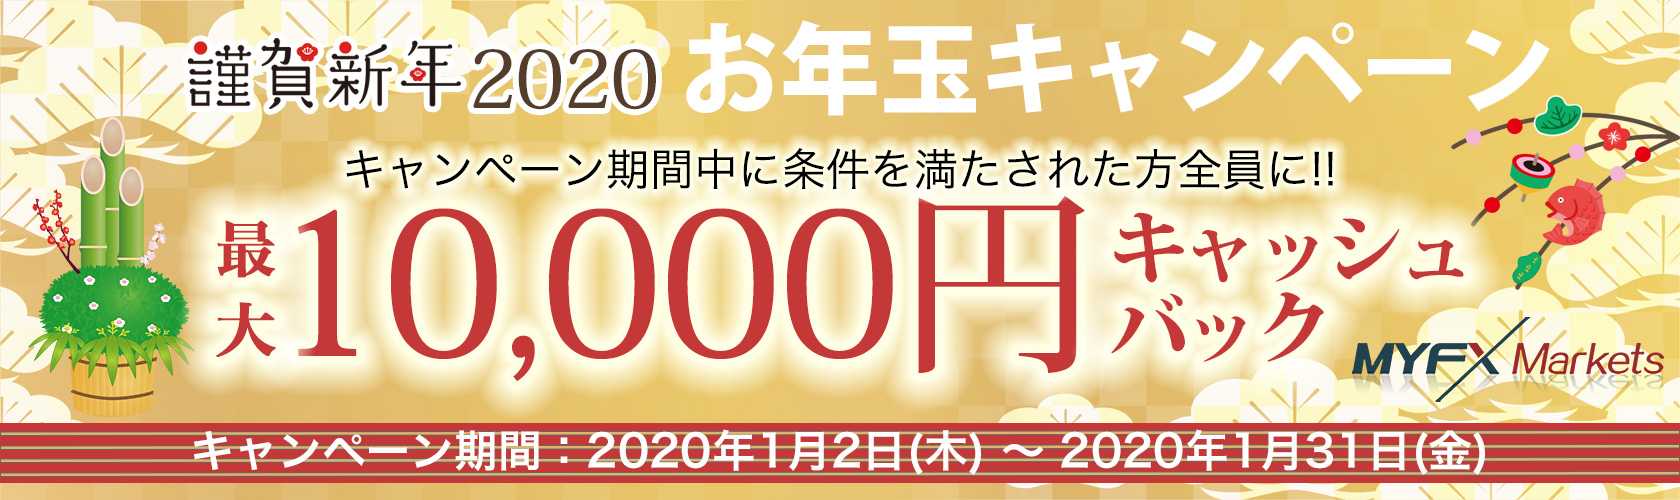 海外FX MYFX Markets　お年玉キャンペーン　最大10,000円キャッシュバック